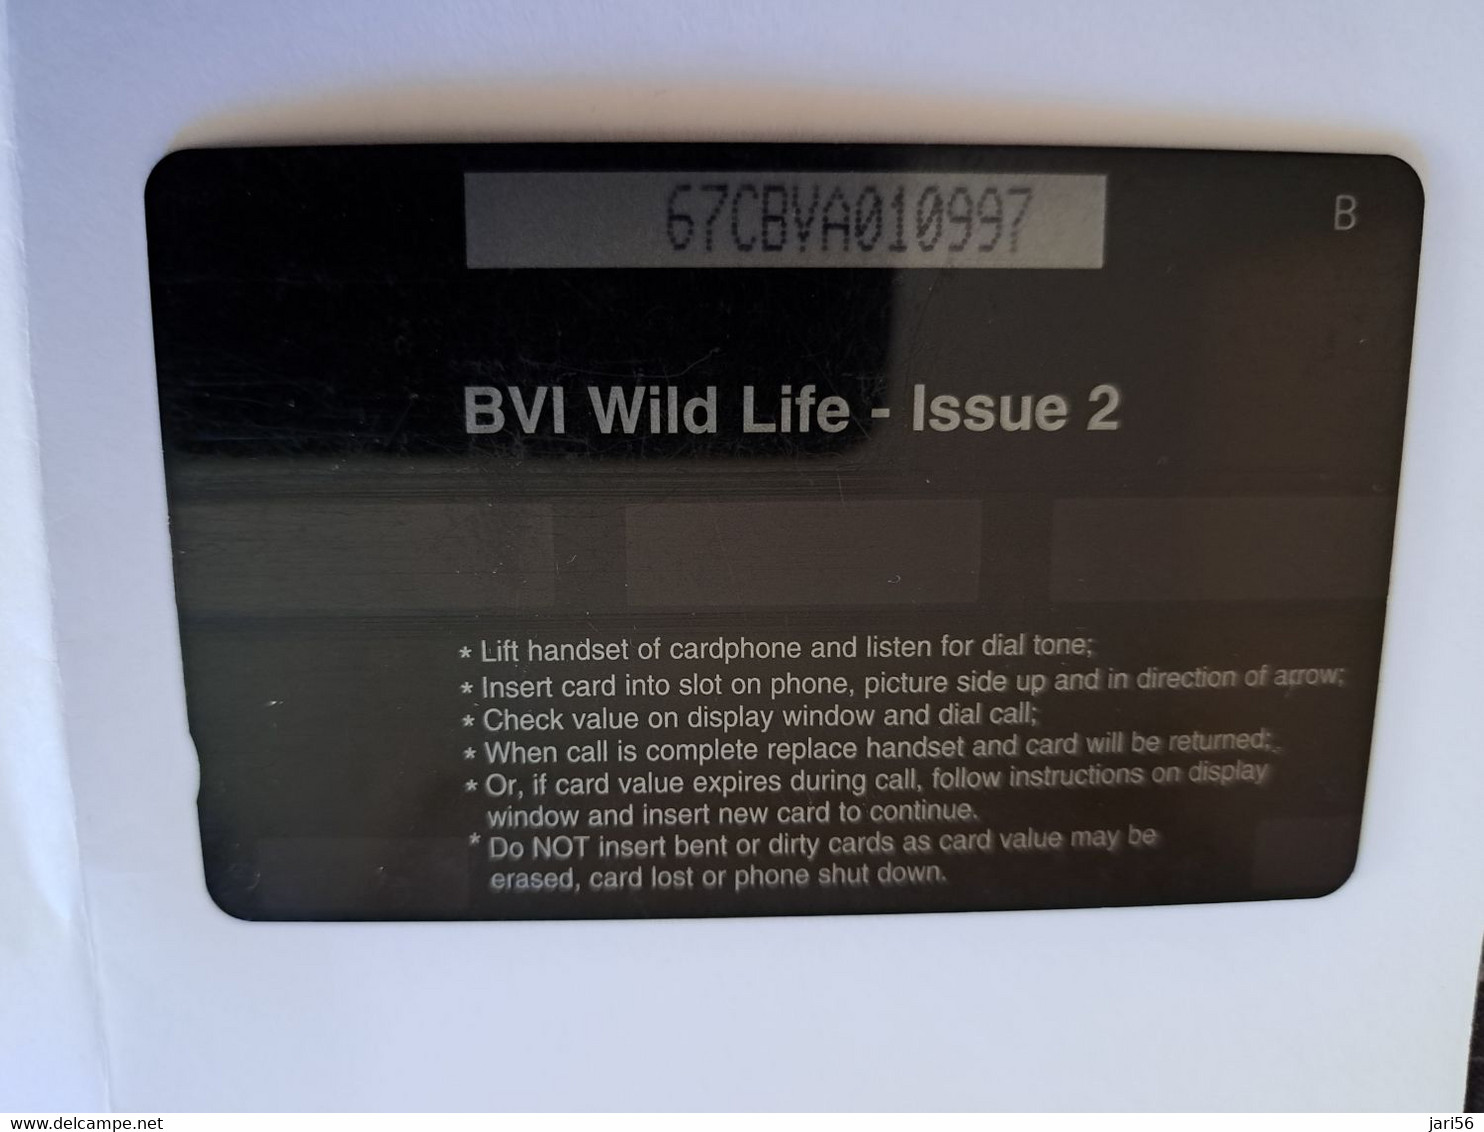 BRITSCH VIRGIN ISLANDS  US$ 5  BVI-67A   HUMMING BIRD    67CBVA     Fine Used Card   ** 11849** - Virgin Islands